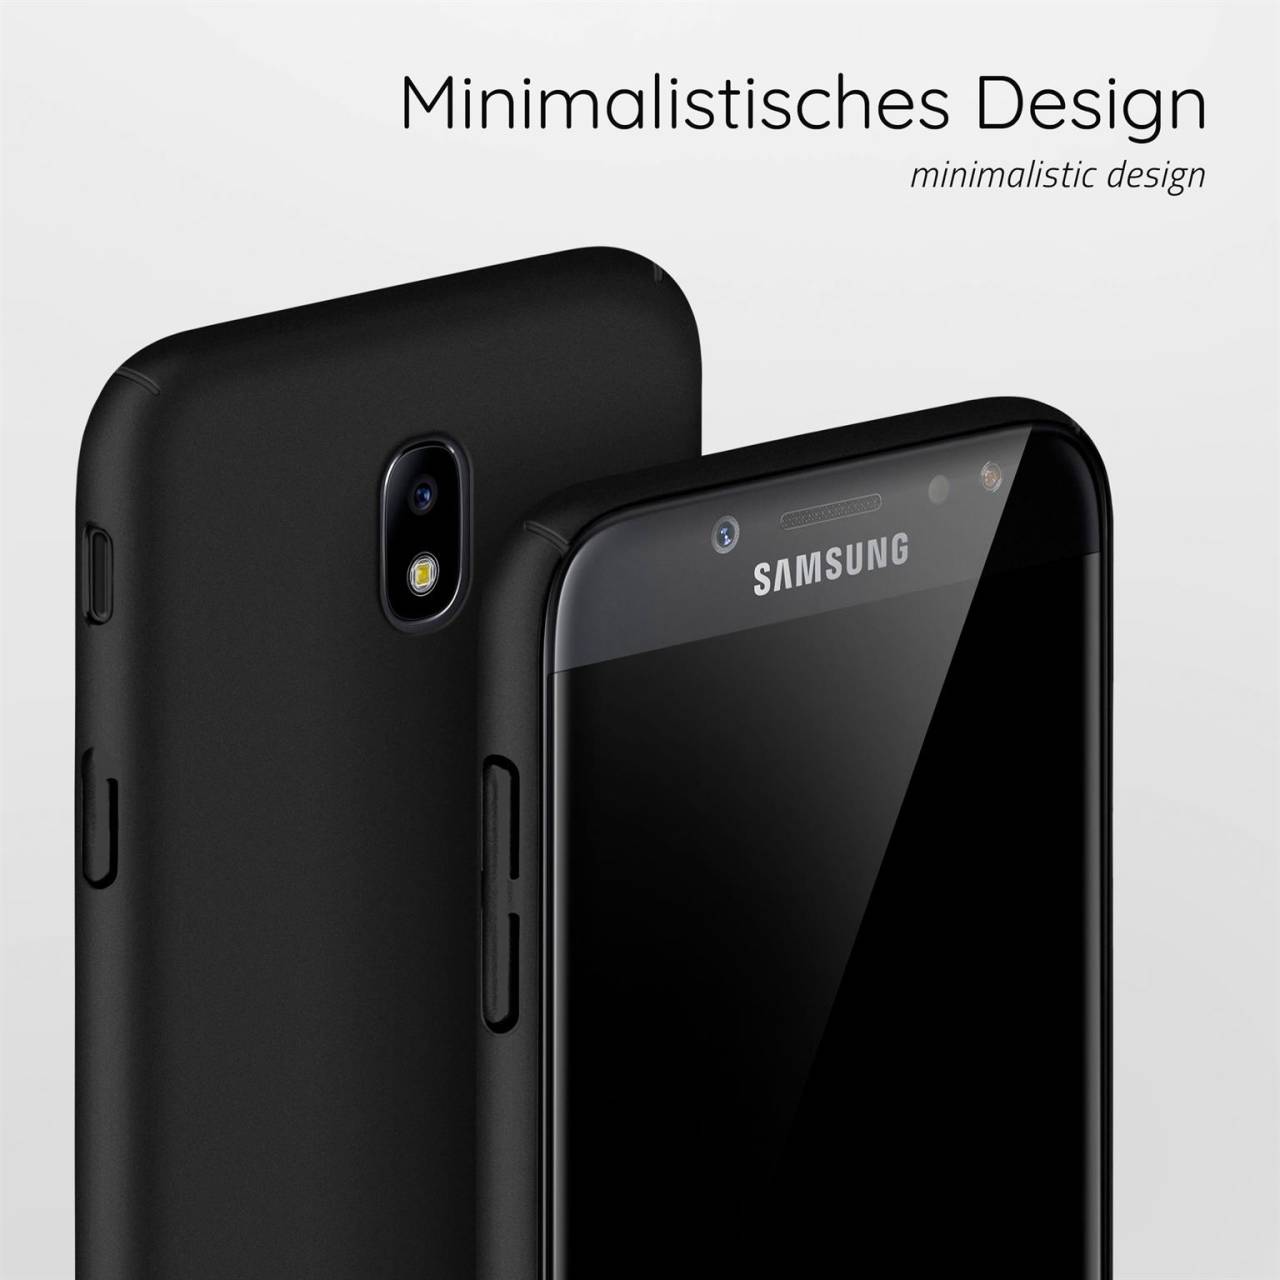 moex Alpha Case für Samsung Galaxy J5 (2017) – Extrem dünne, minimalistische Hülle in seidenmatt